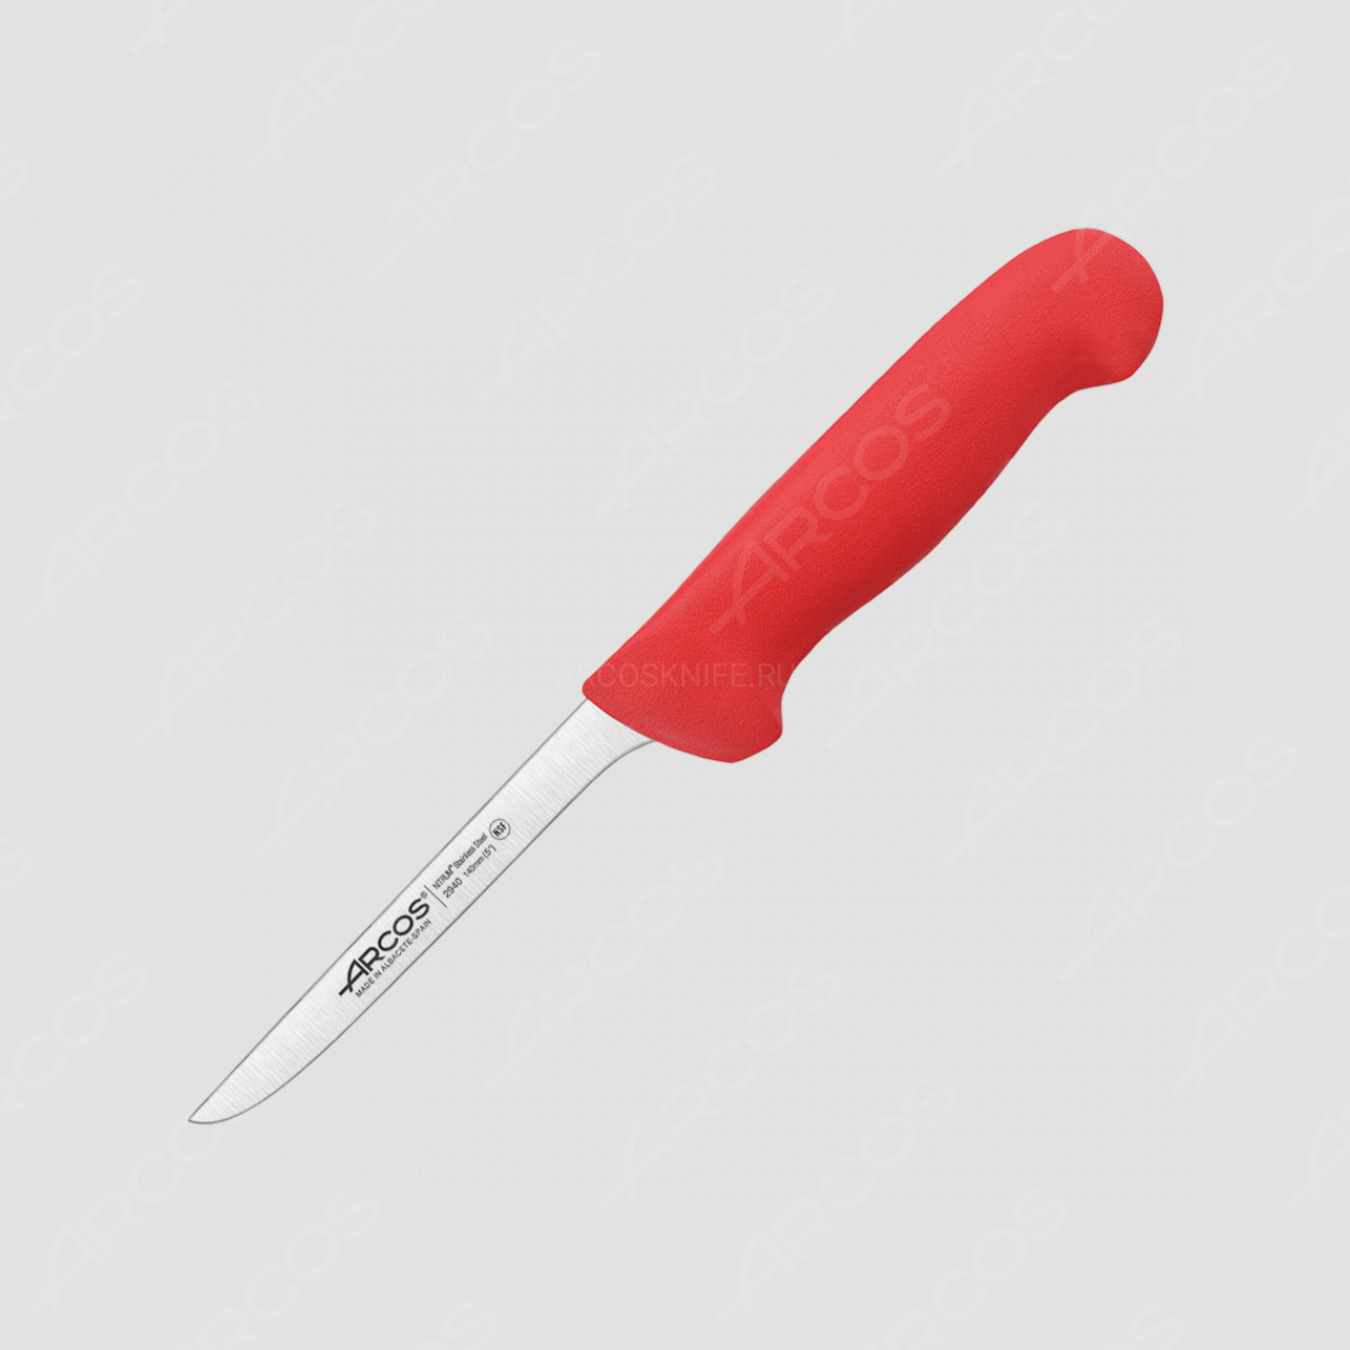 Нож кухонный обвалочный 14 см, рукоять красная, серия 2900, ARCOS, Испания